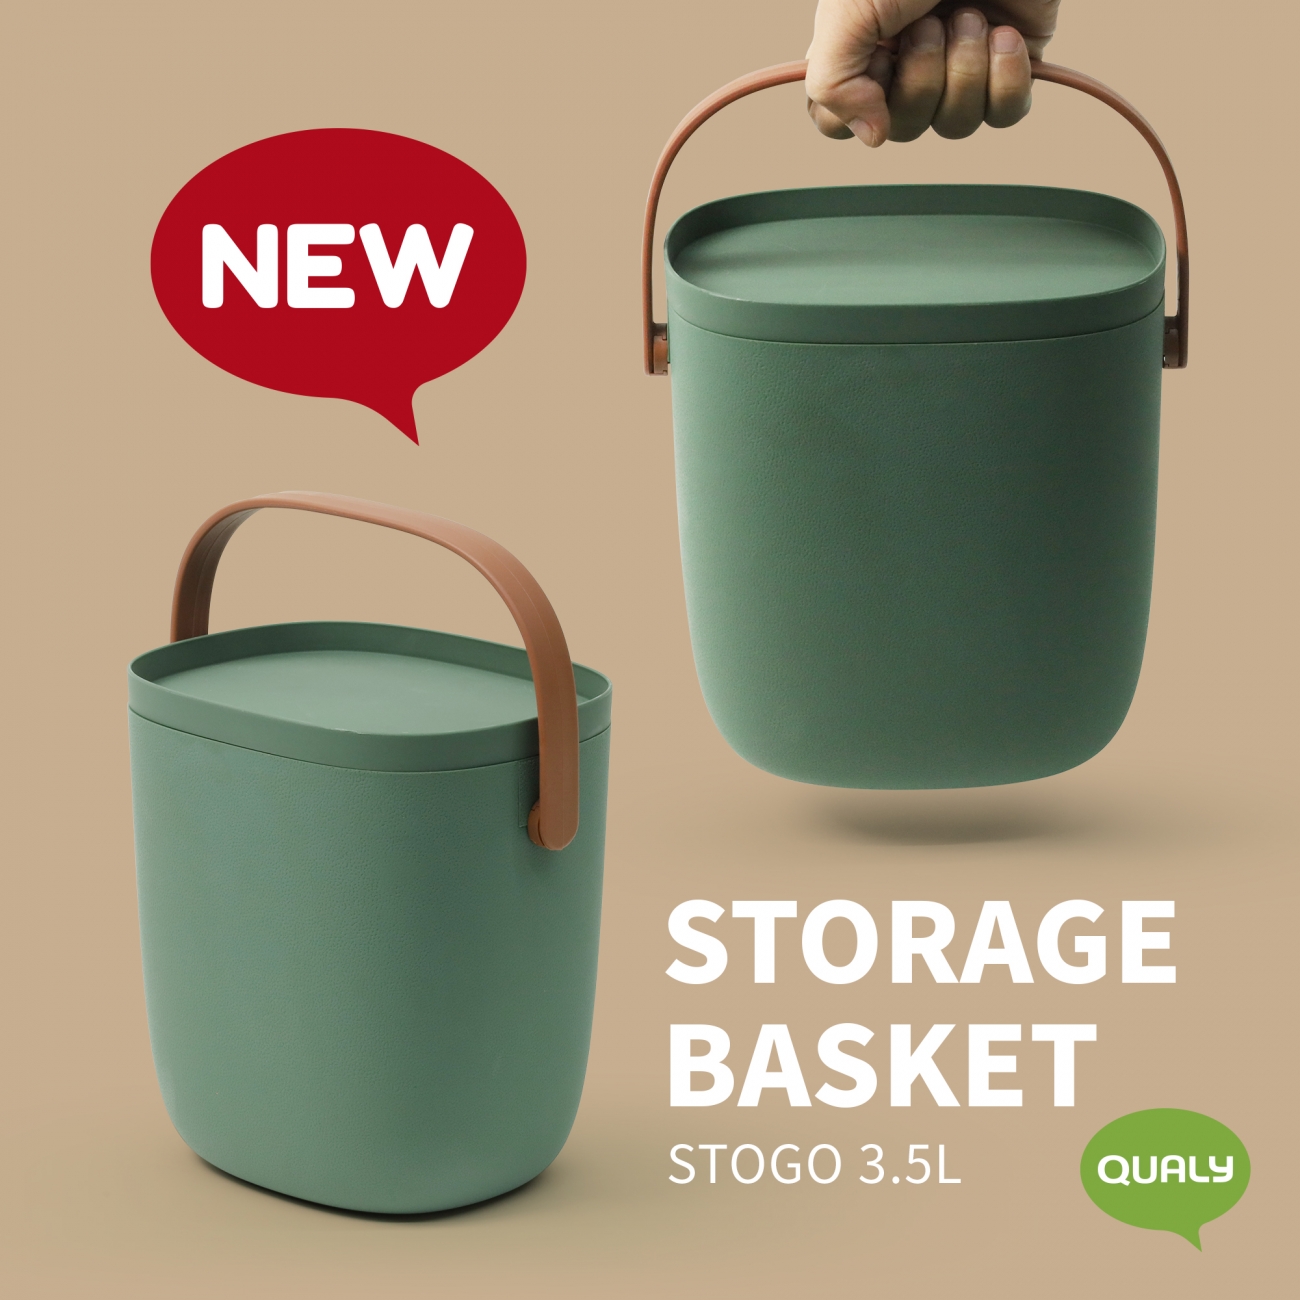 STOGO 3.5L (Storage Basket)